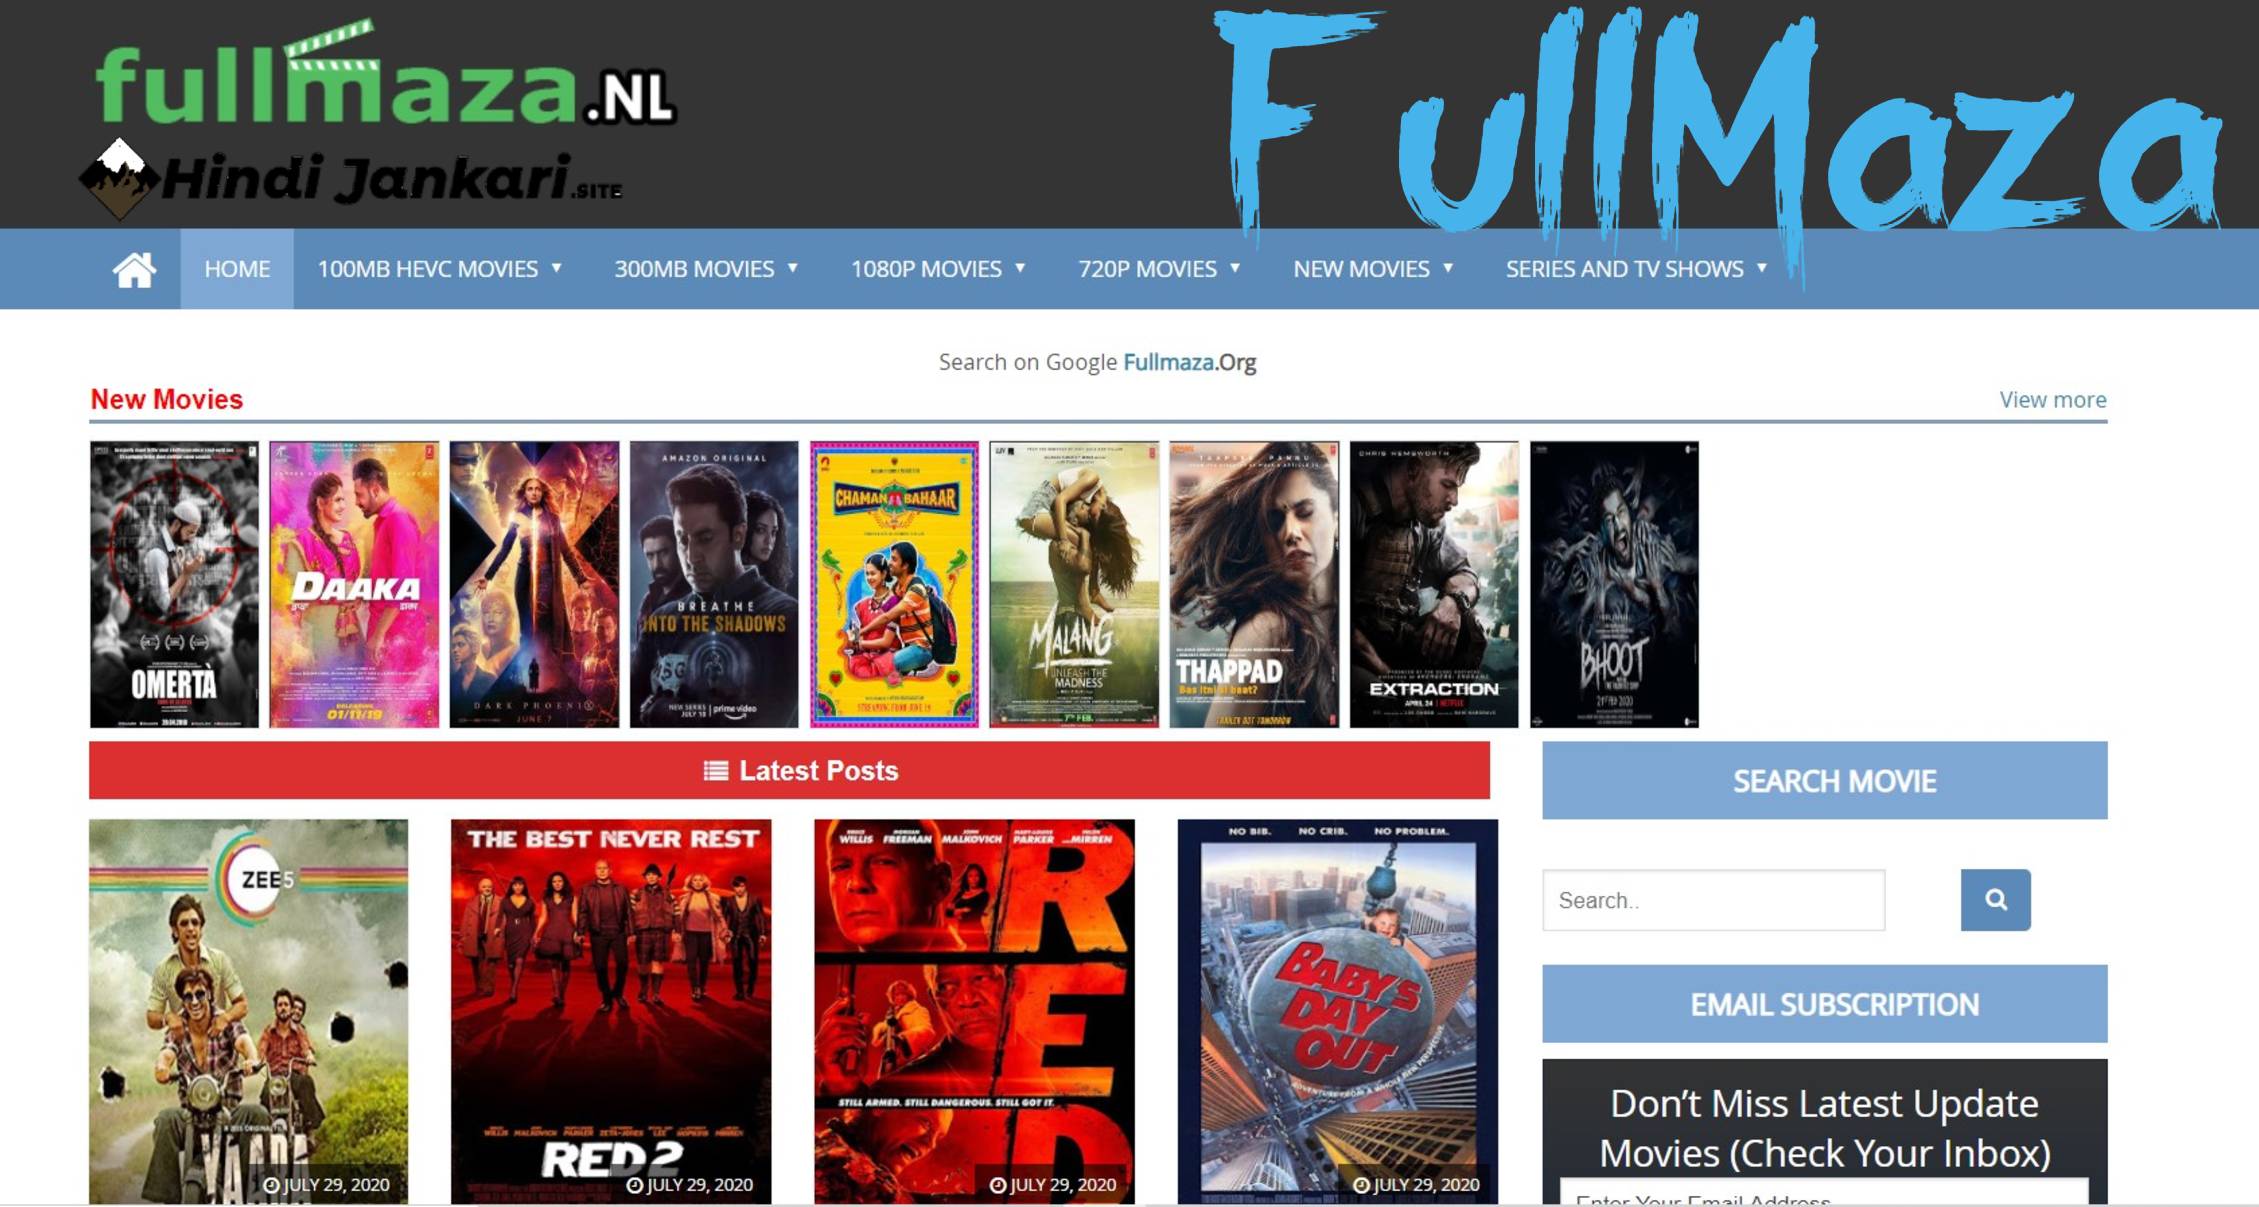 Fullmaza – Download 300MB Movies Full maza Bollywood Hollywood Movies Full